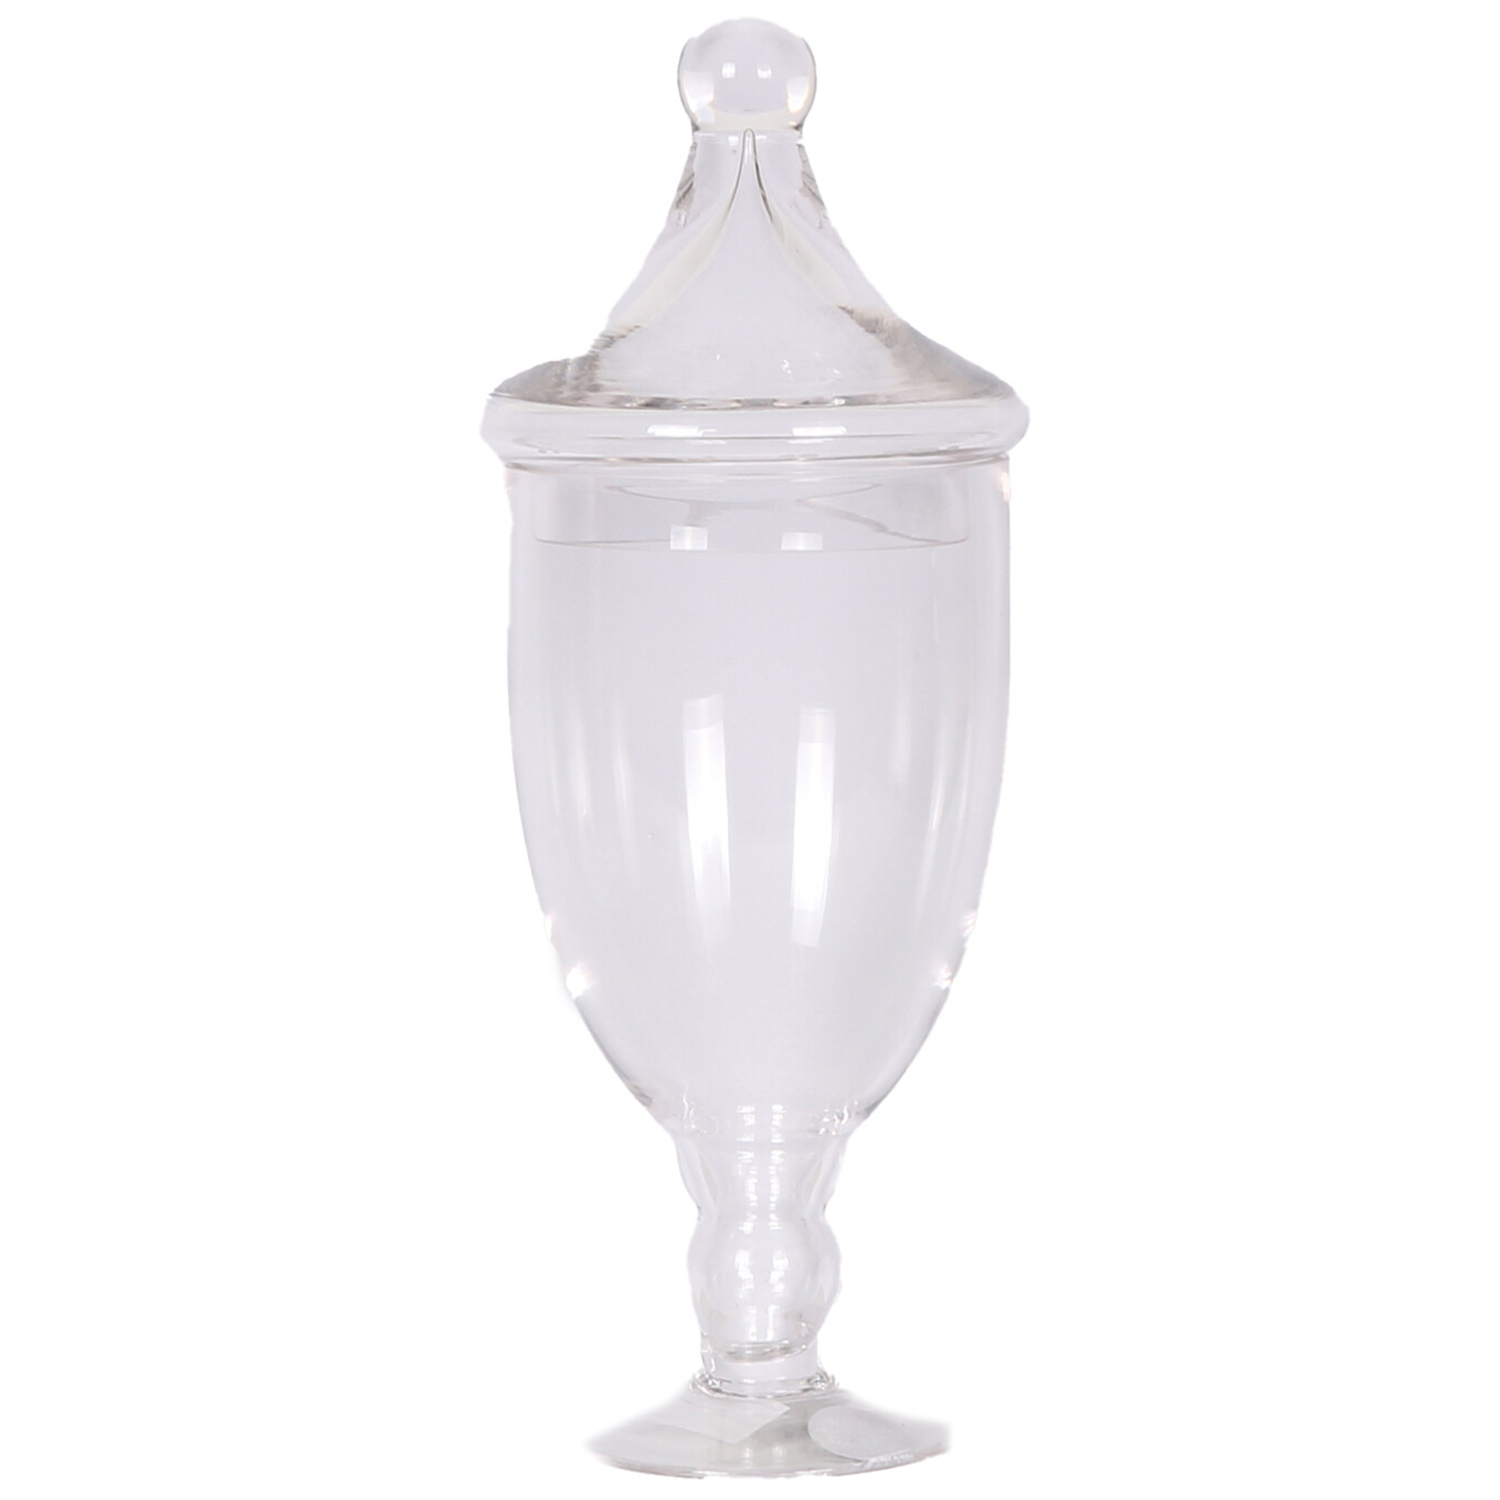 Vintage Glass Jar Ornament Image